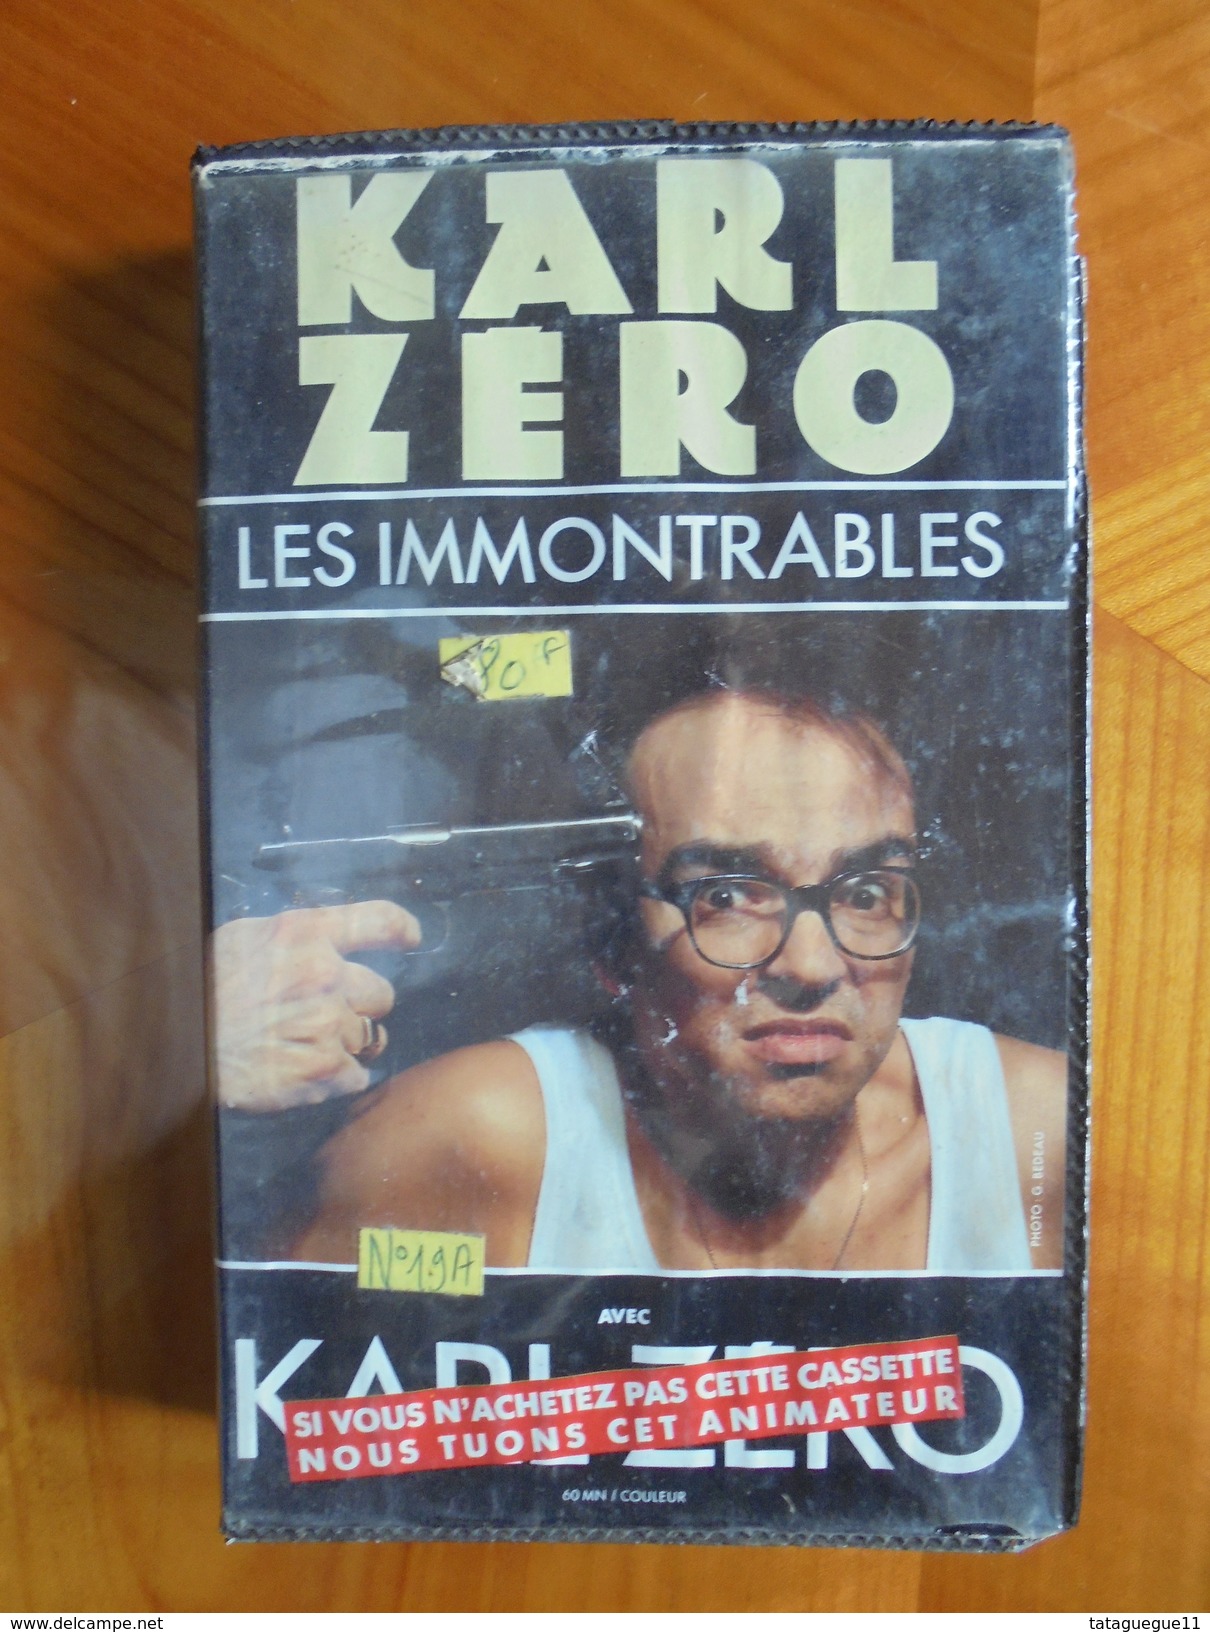 Ancien - Cassette Vidéo KARL ZERO Les Immontrables 1991 - Tv Shows & Series